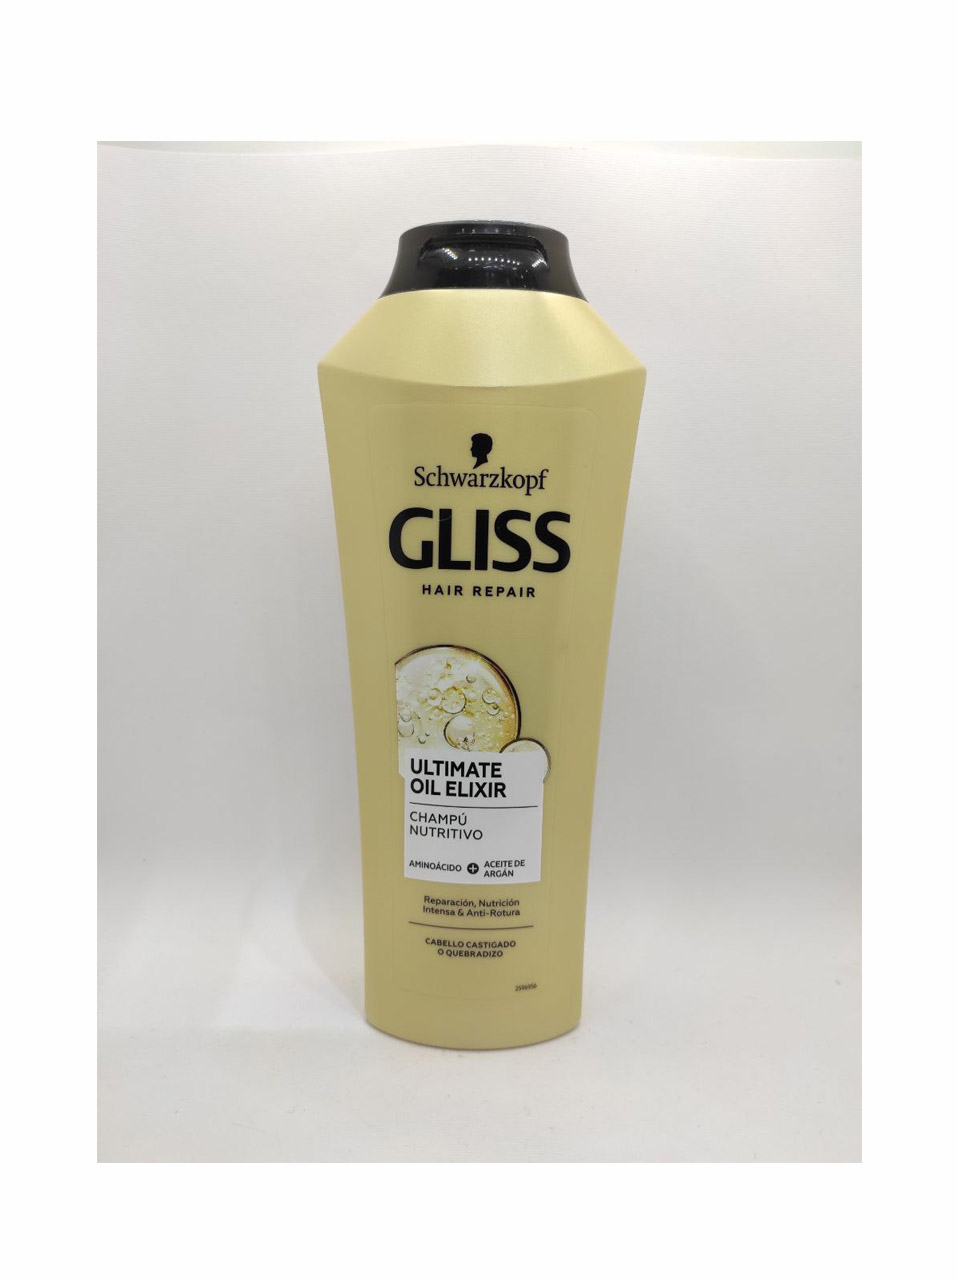 شامپو سر مخصوص موهای ضعیف و آسیب دیده 400 میل گلیس GLISS Ultimate oil Elixir